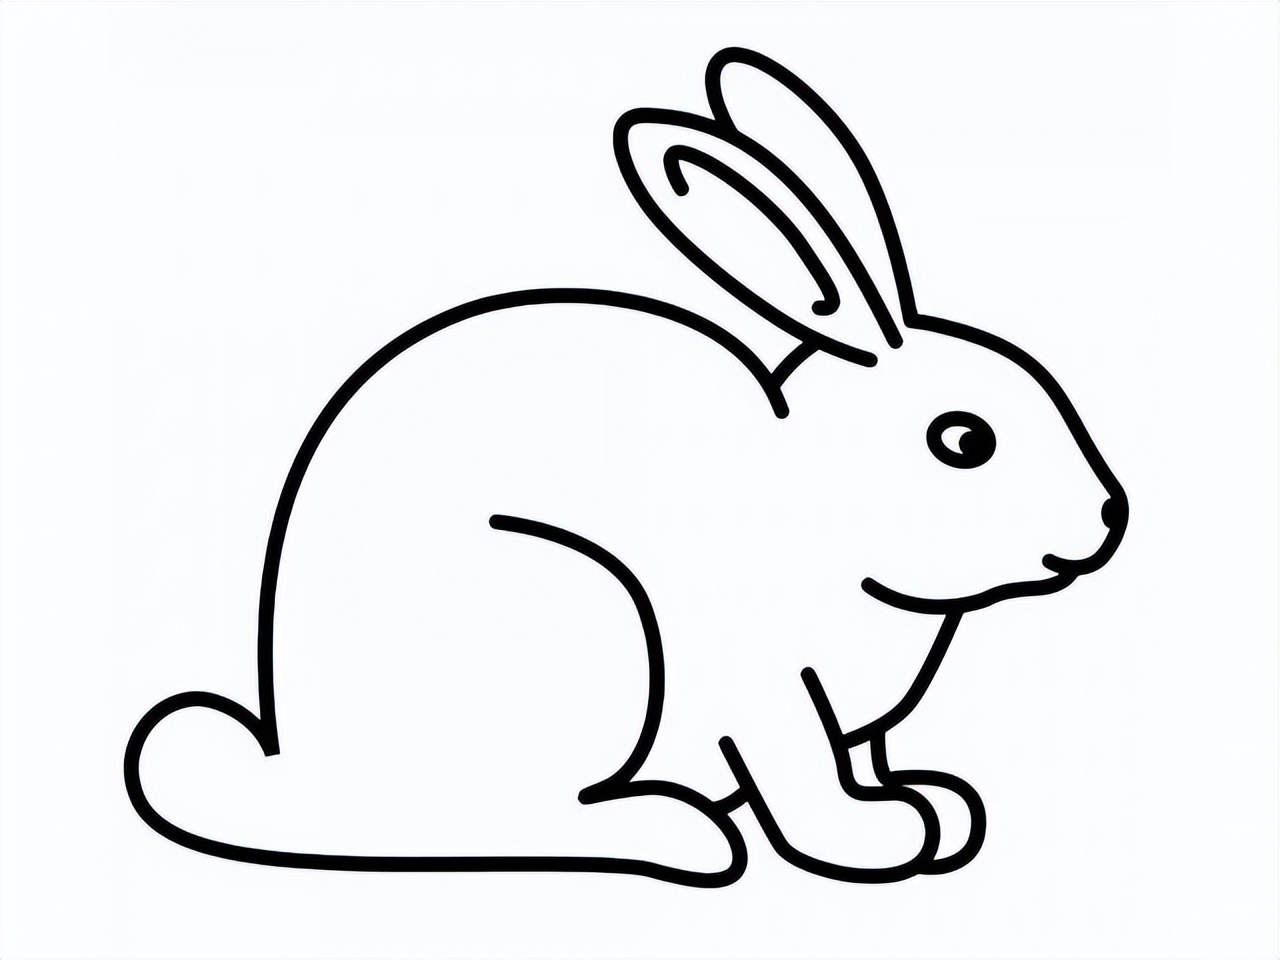 兔子简笔画形态图片